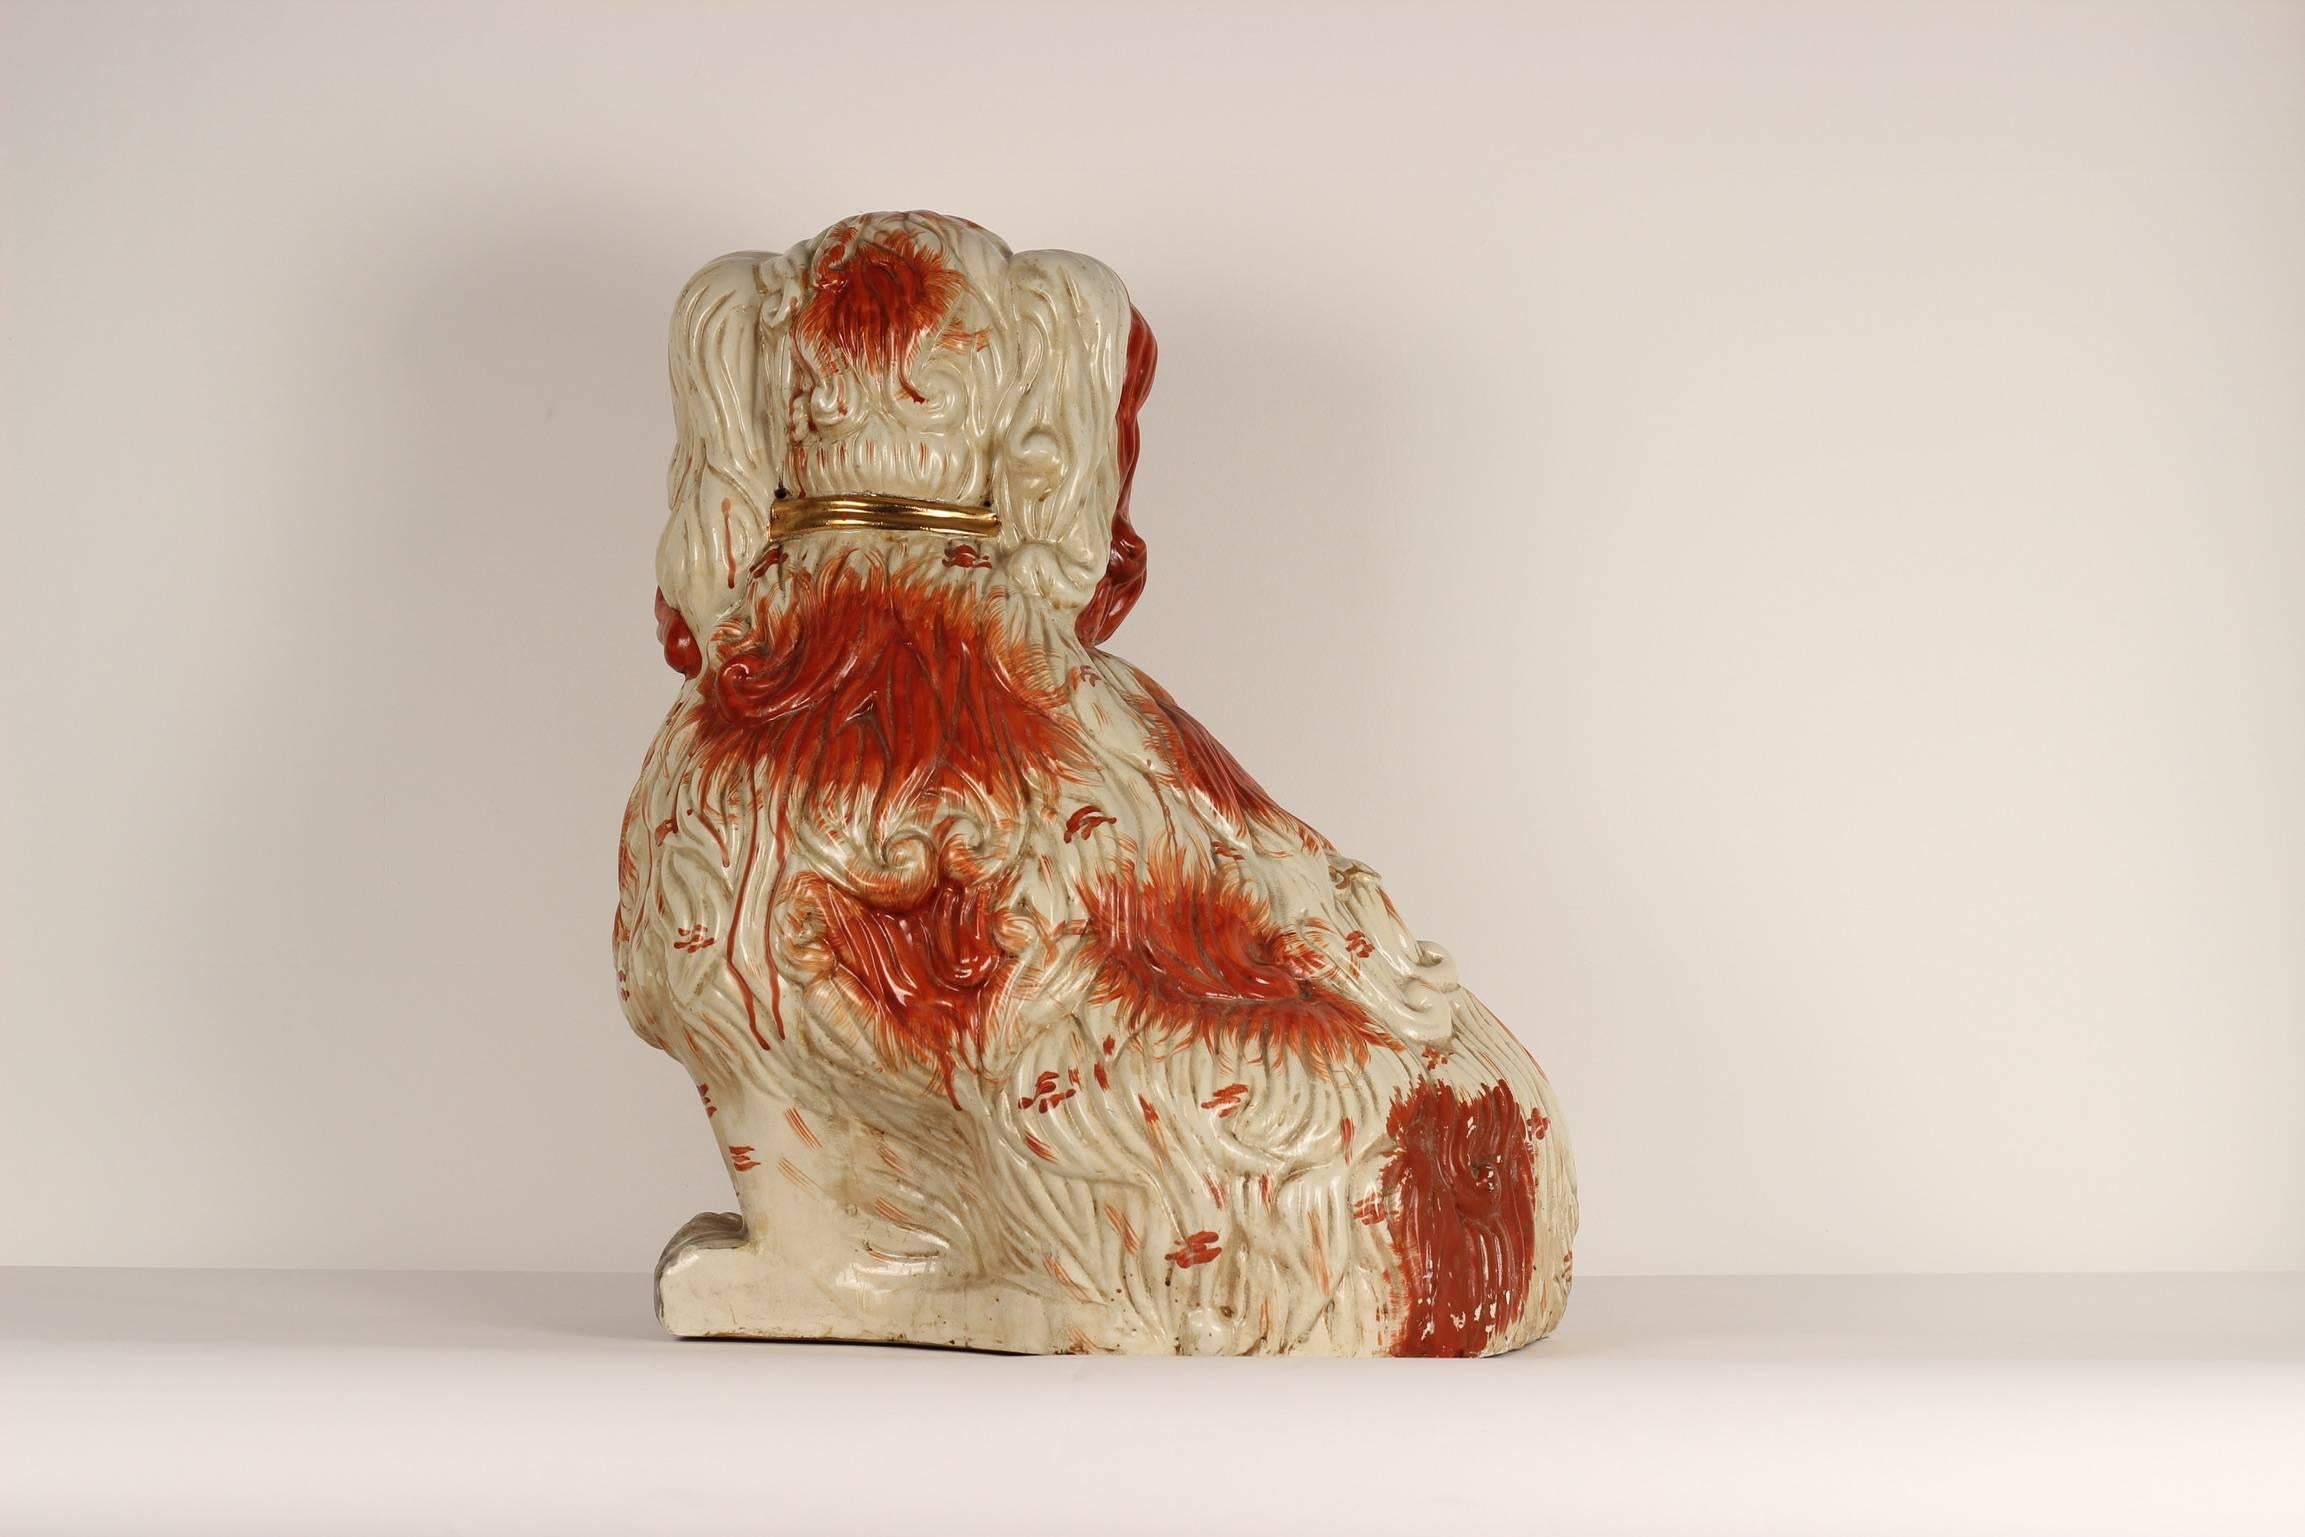 Une grande paire de figurines en porcelaine anglaise Staffordshire représentant des chiens épagneuls assis orange et blanc avec des laisses en chaîne dorée.
Leurs deux pattes avant sont séparées, un procédé plus délicat, donc rare, qui fait de cette